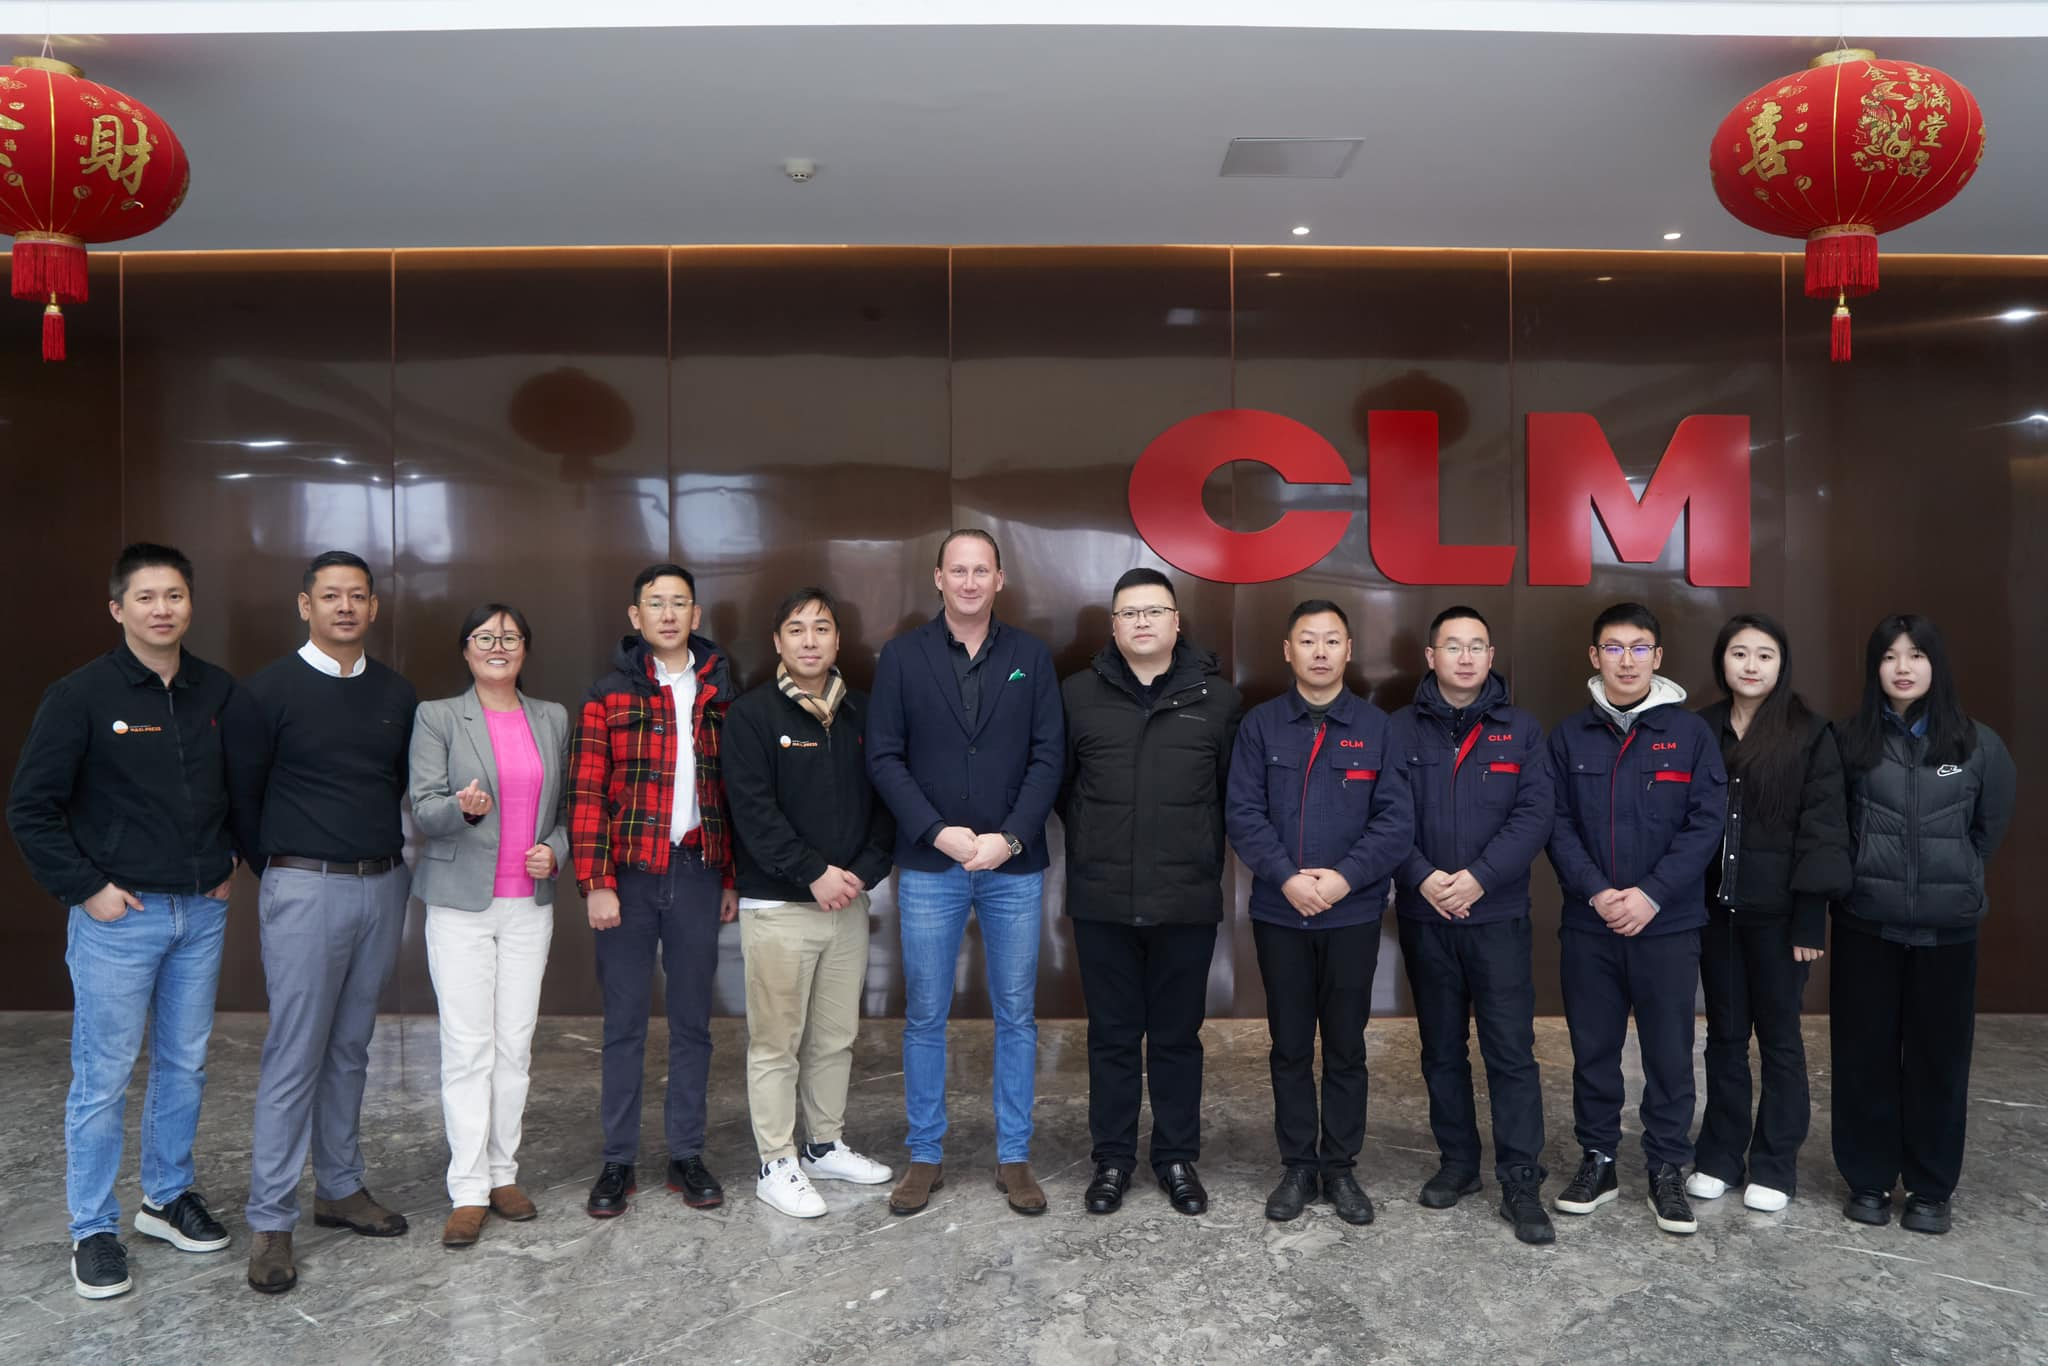 आमच्या जर्मन पुरवठादाराने CLM कारखान्याला भेट दिली त्यांचे मनापासून स्वागत